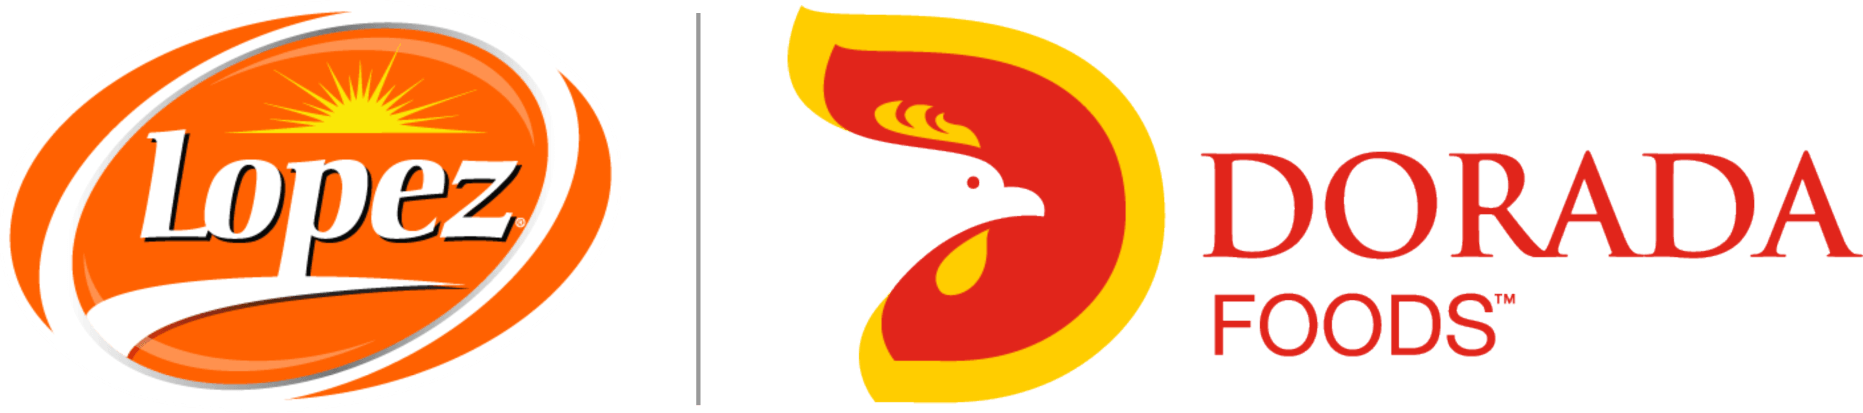 Logo-Dorada-Foods-Logo